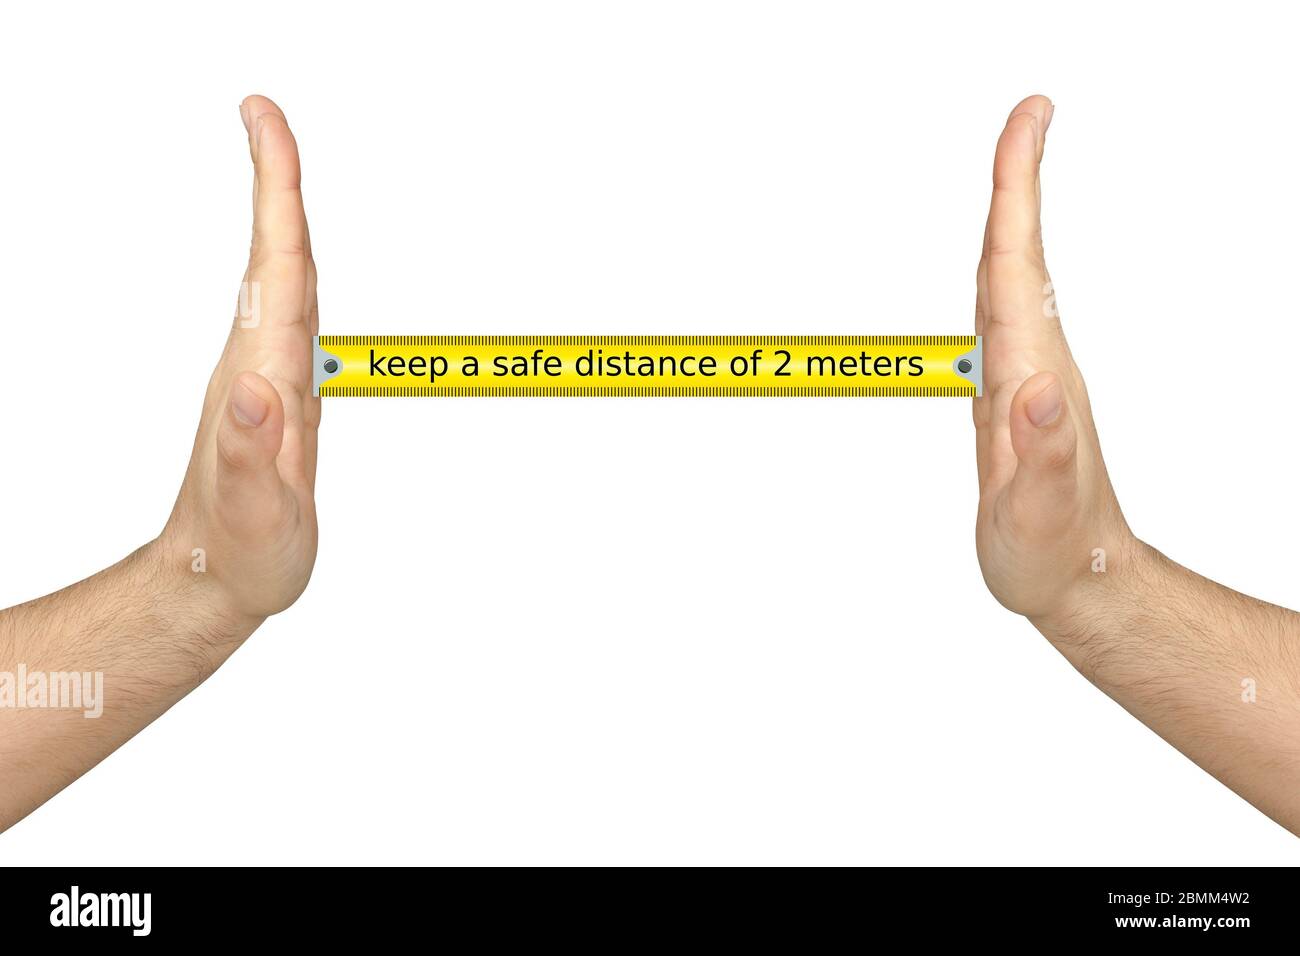 le mani maschili misurano o mostrano la distanza sociale di 2 metri concetto isolato su bianco Foto Stock